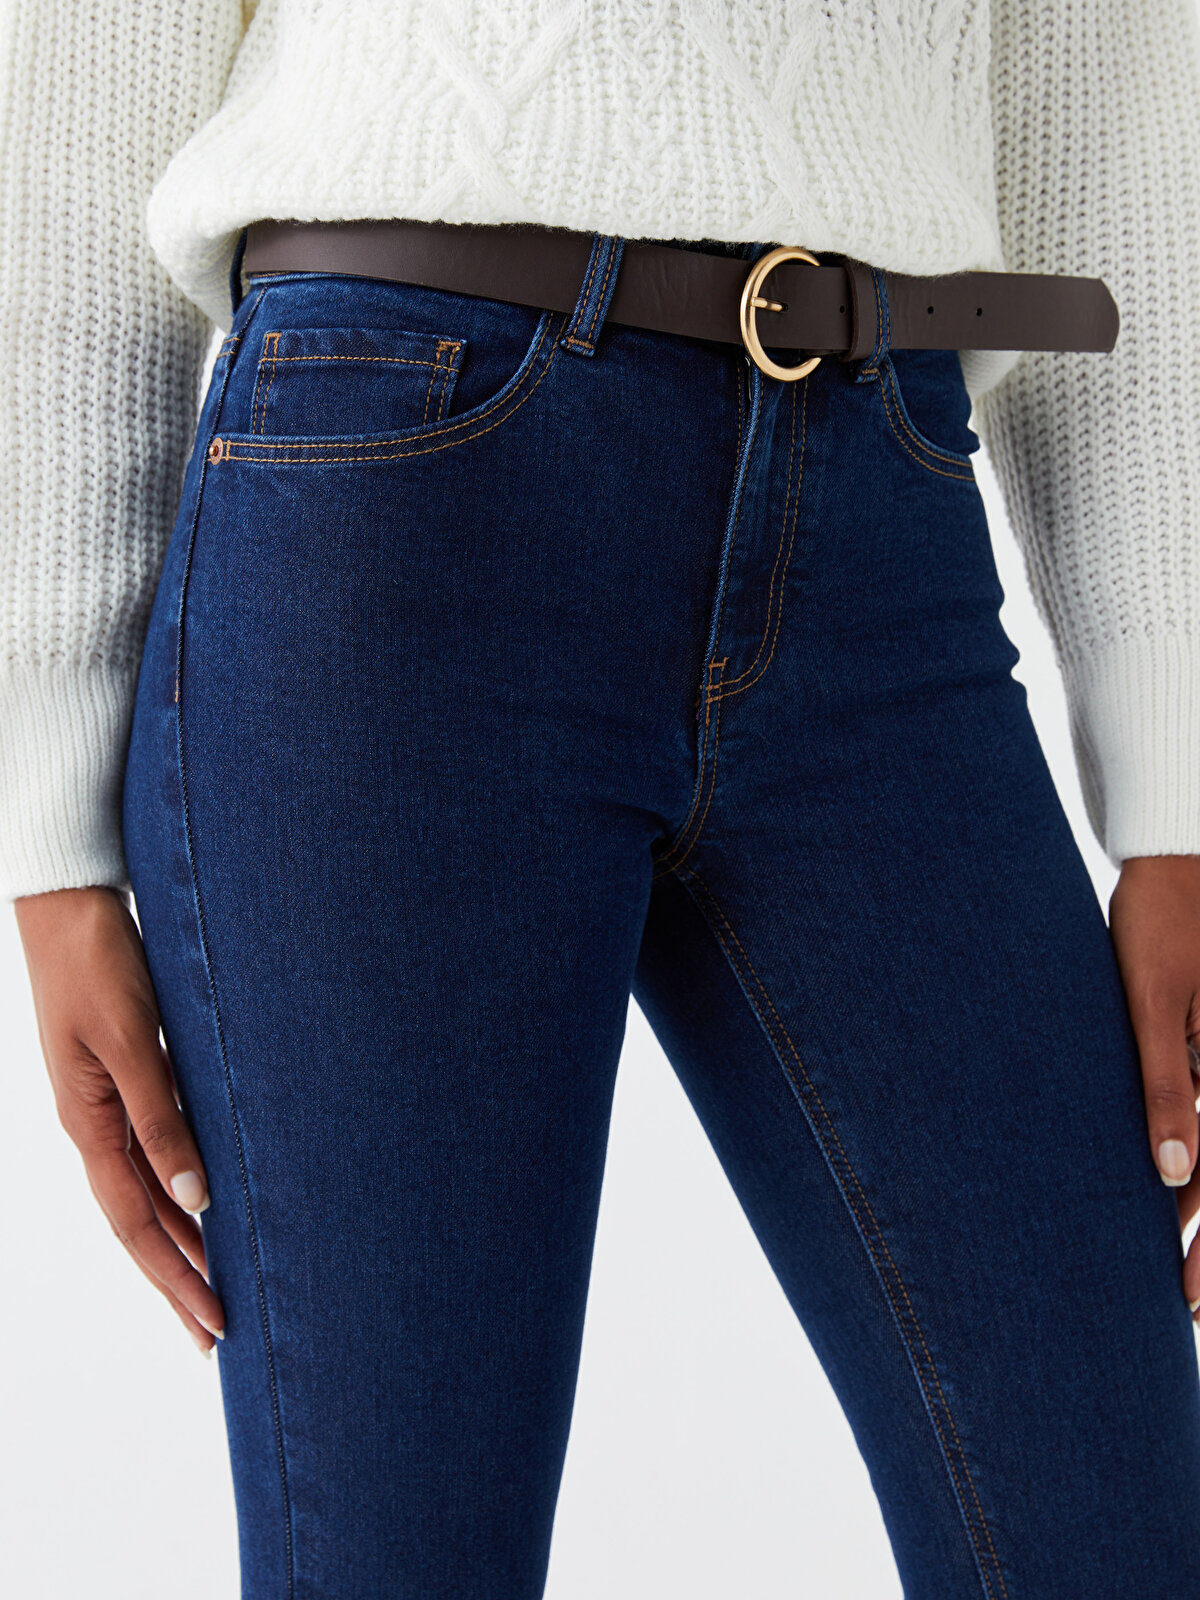 High Waist Belted Skinny Fit Women's Jeans -W38092Z8-309 